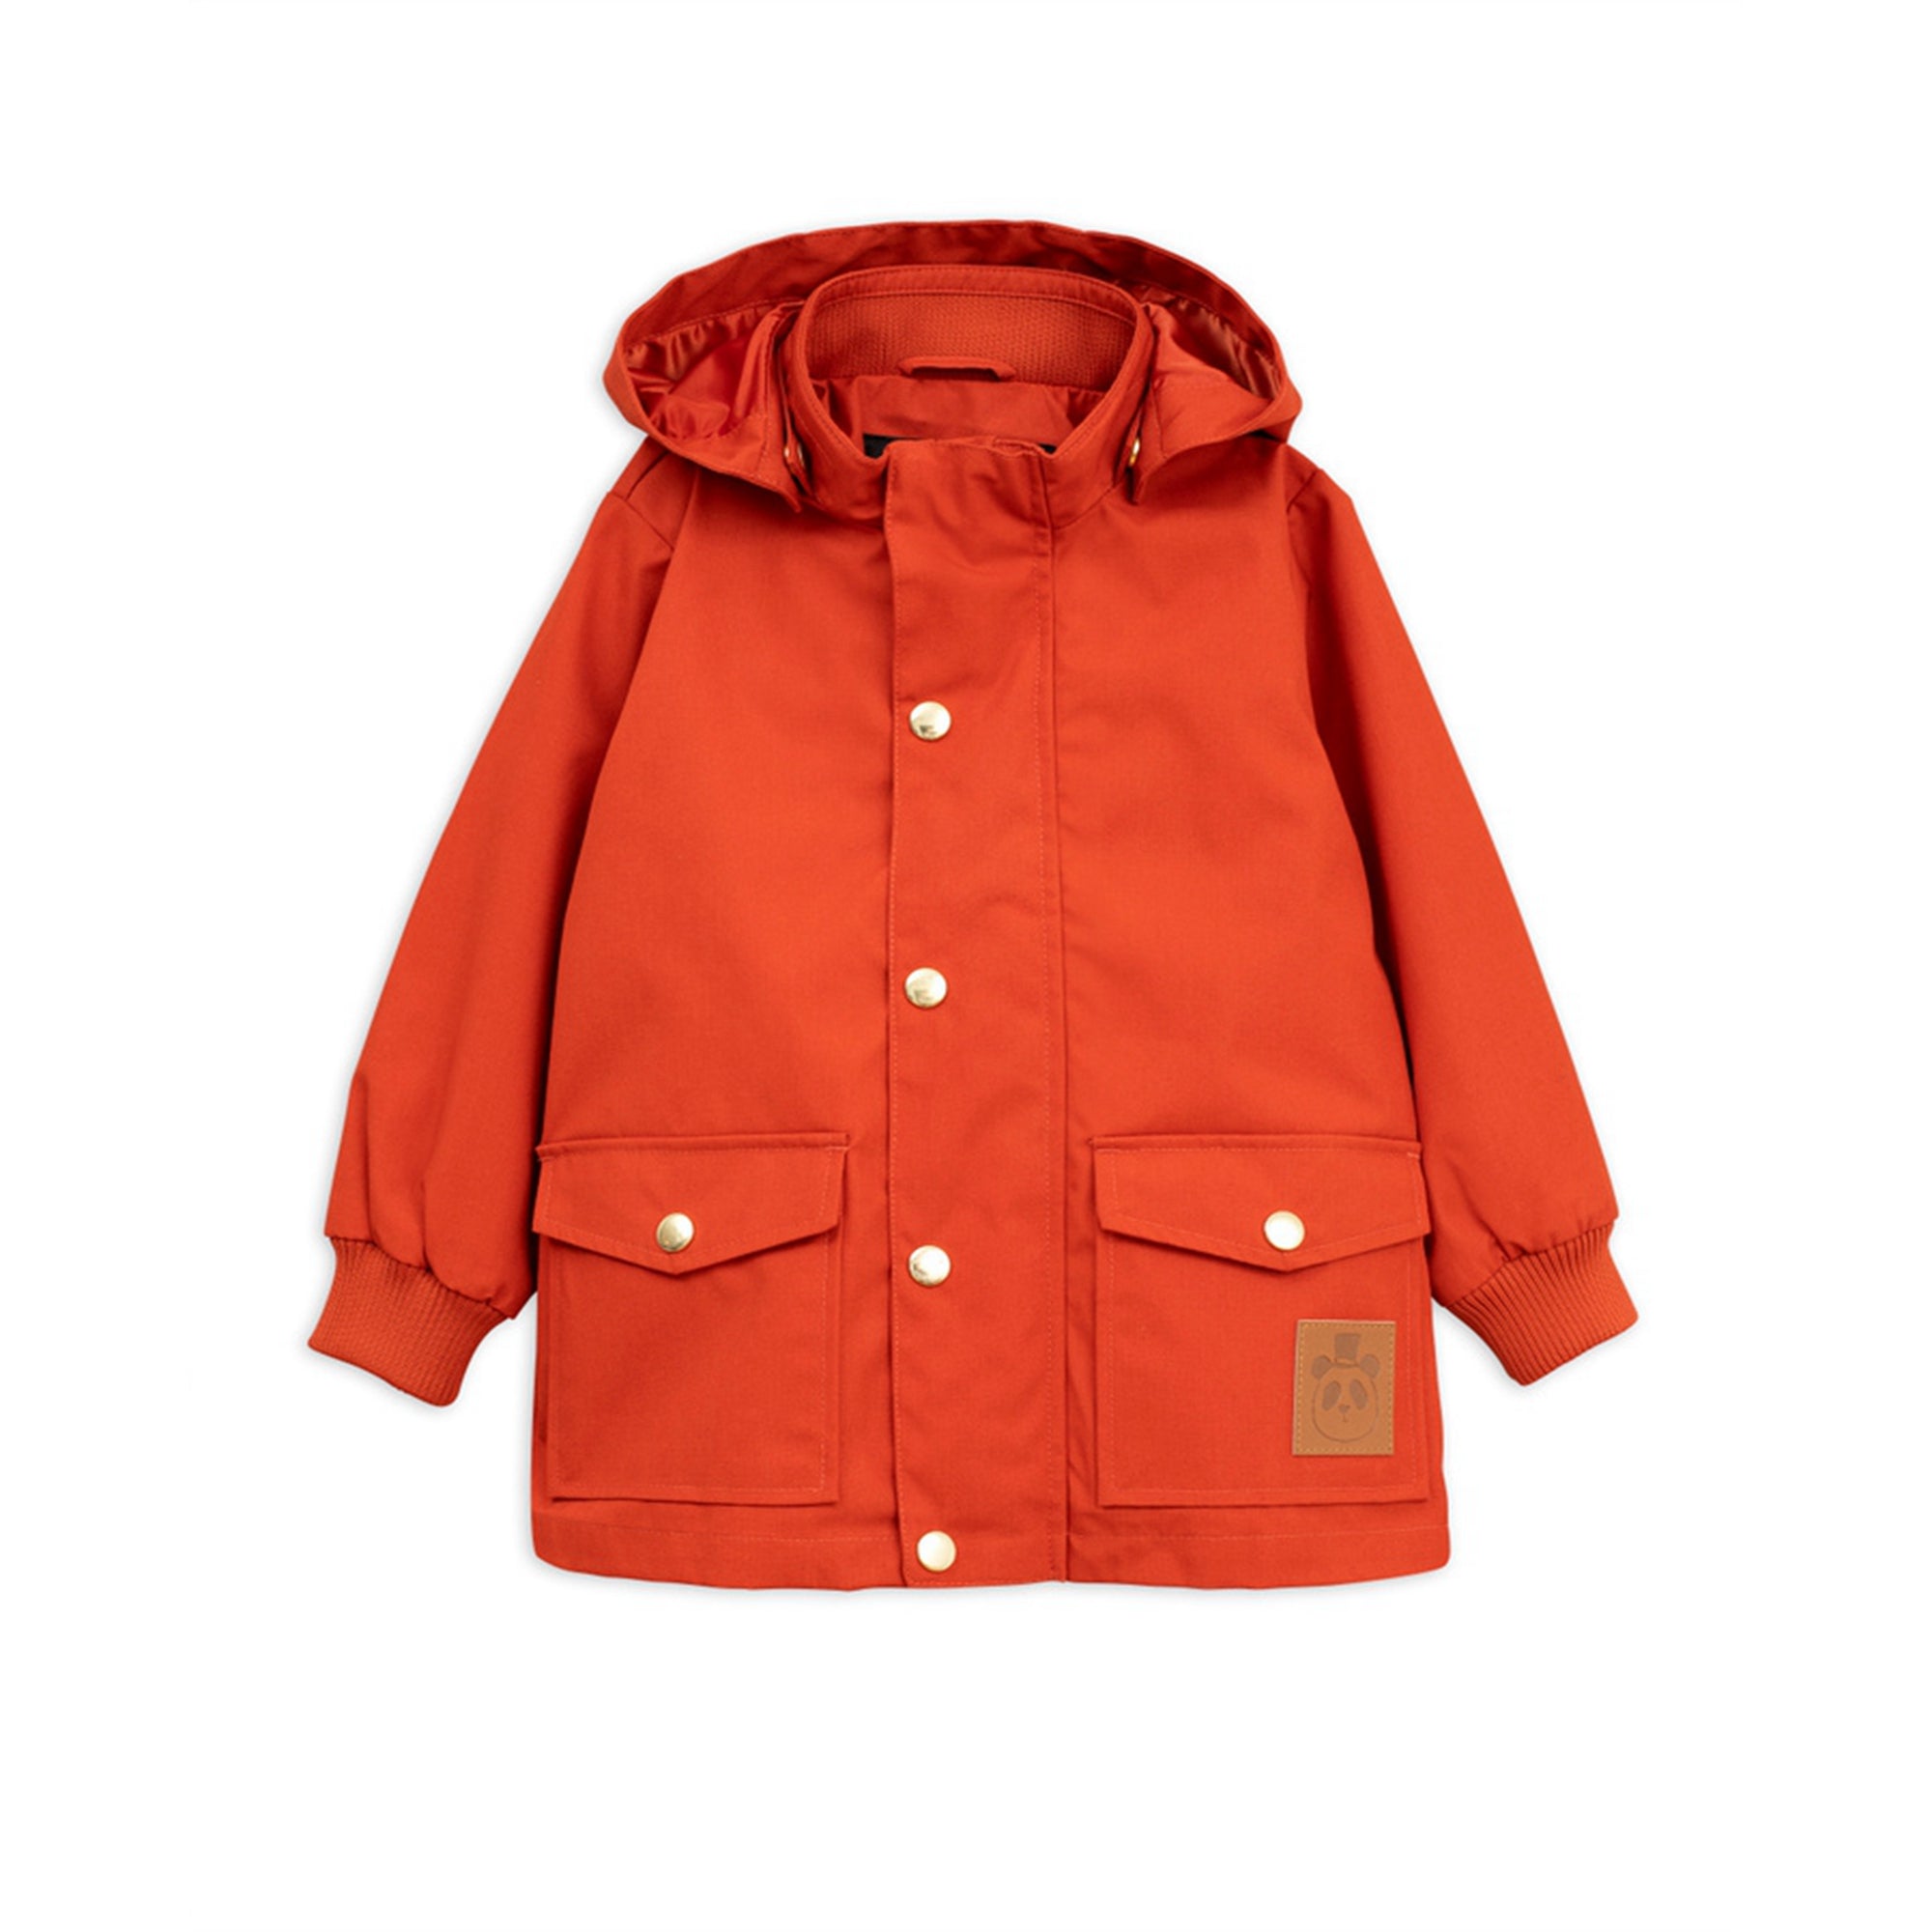 Girls Red Pico Jacket